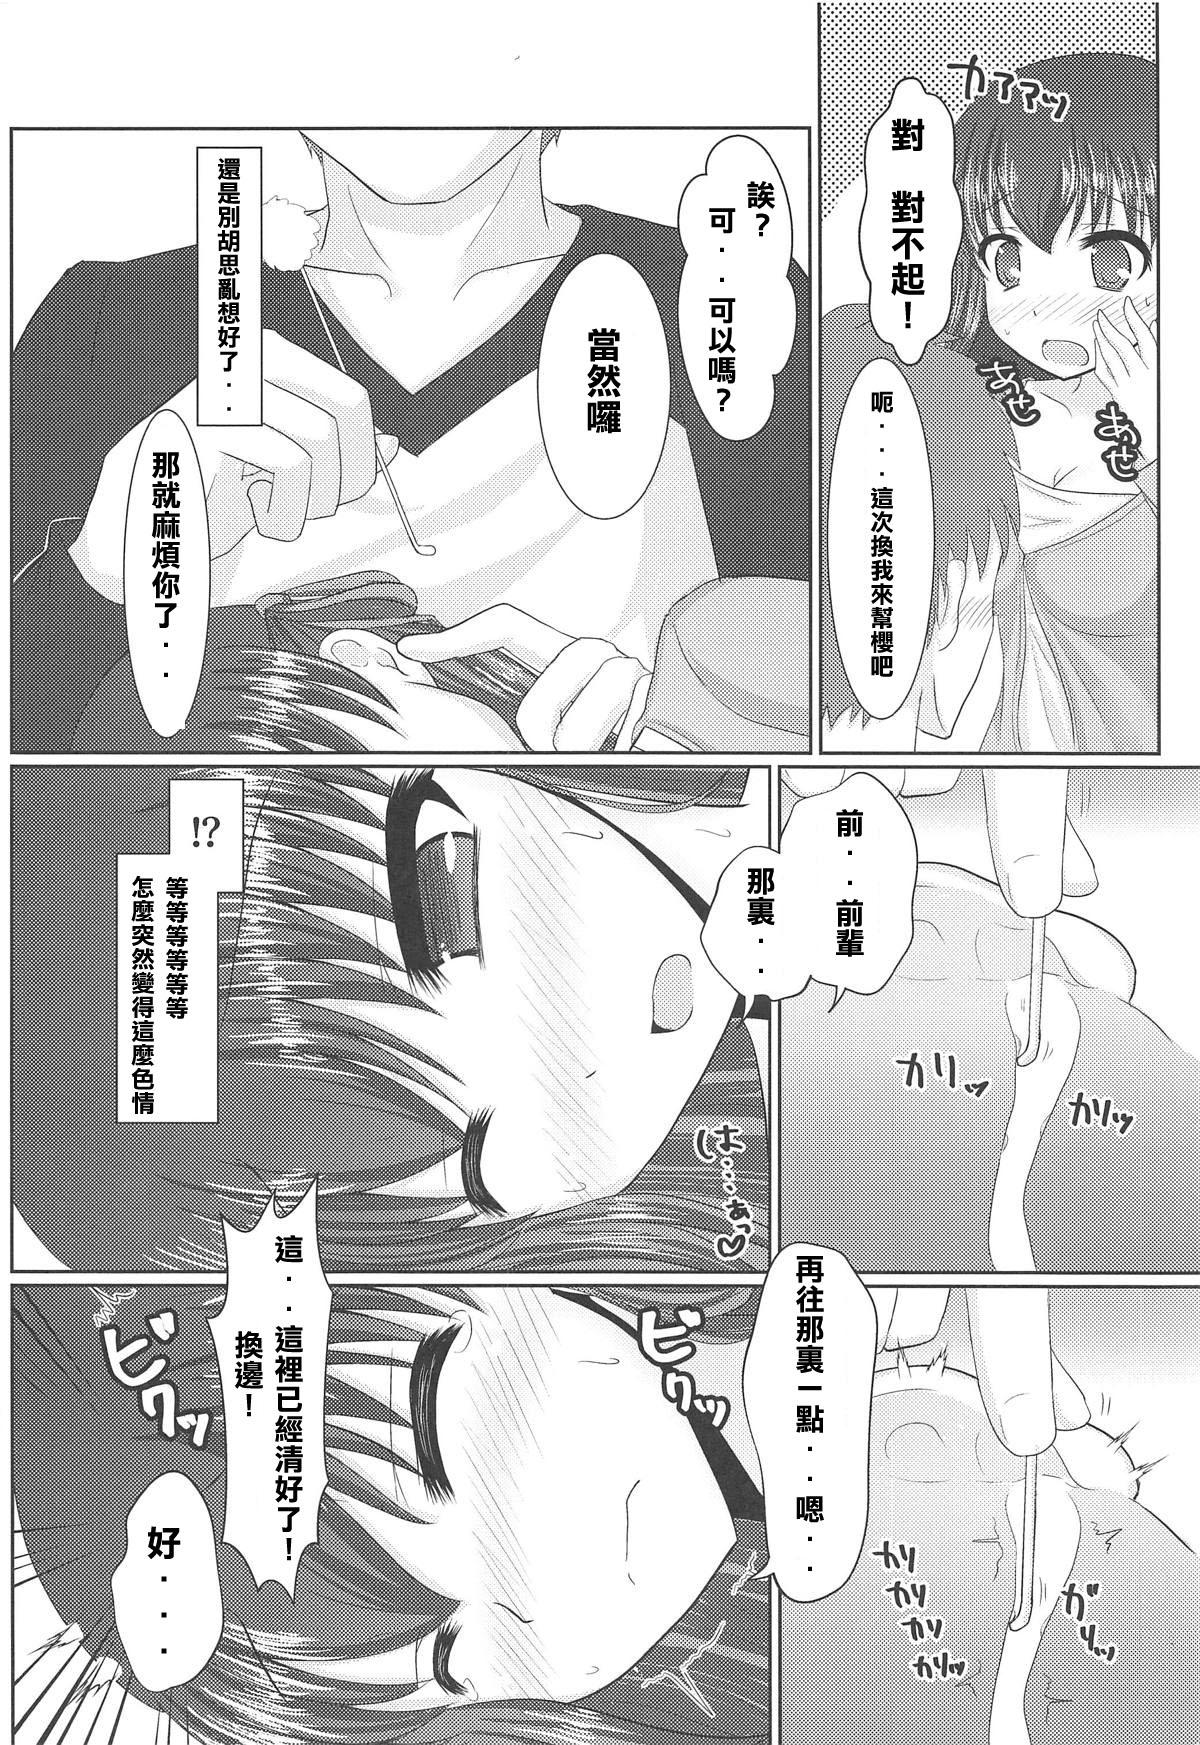 British Hiza no Ue ni Sakura - Fate stay night Orgasms - Page 8